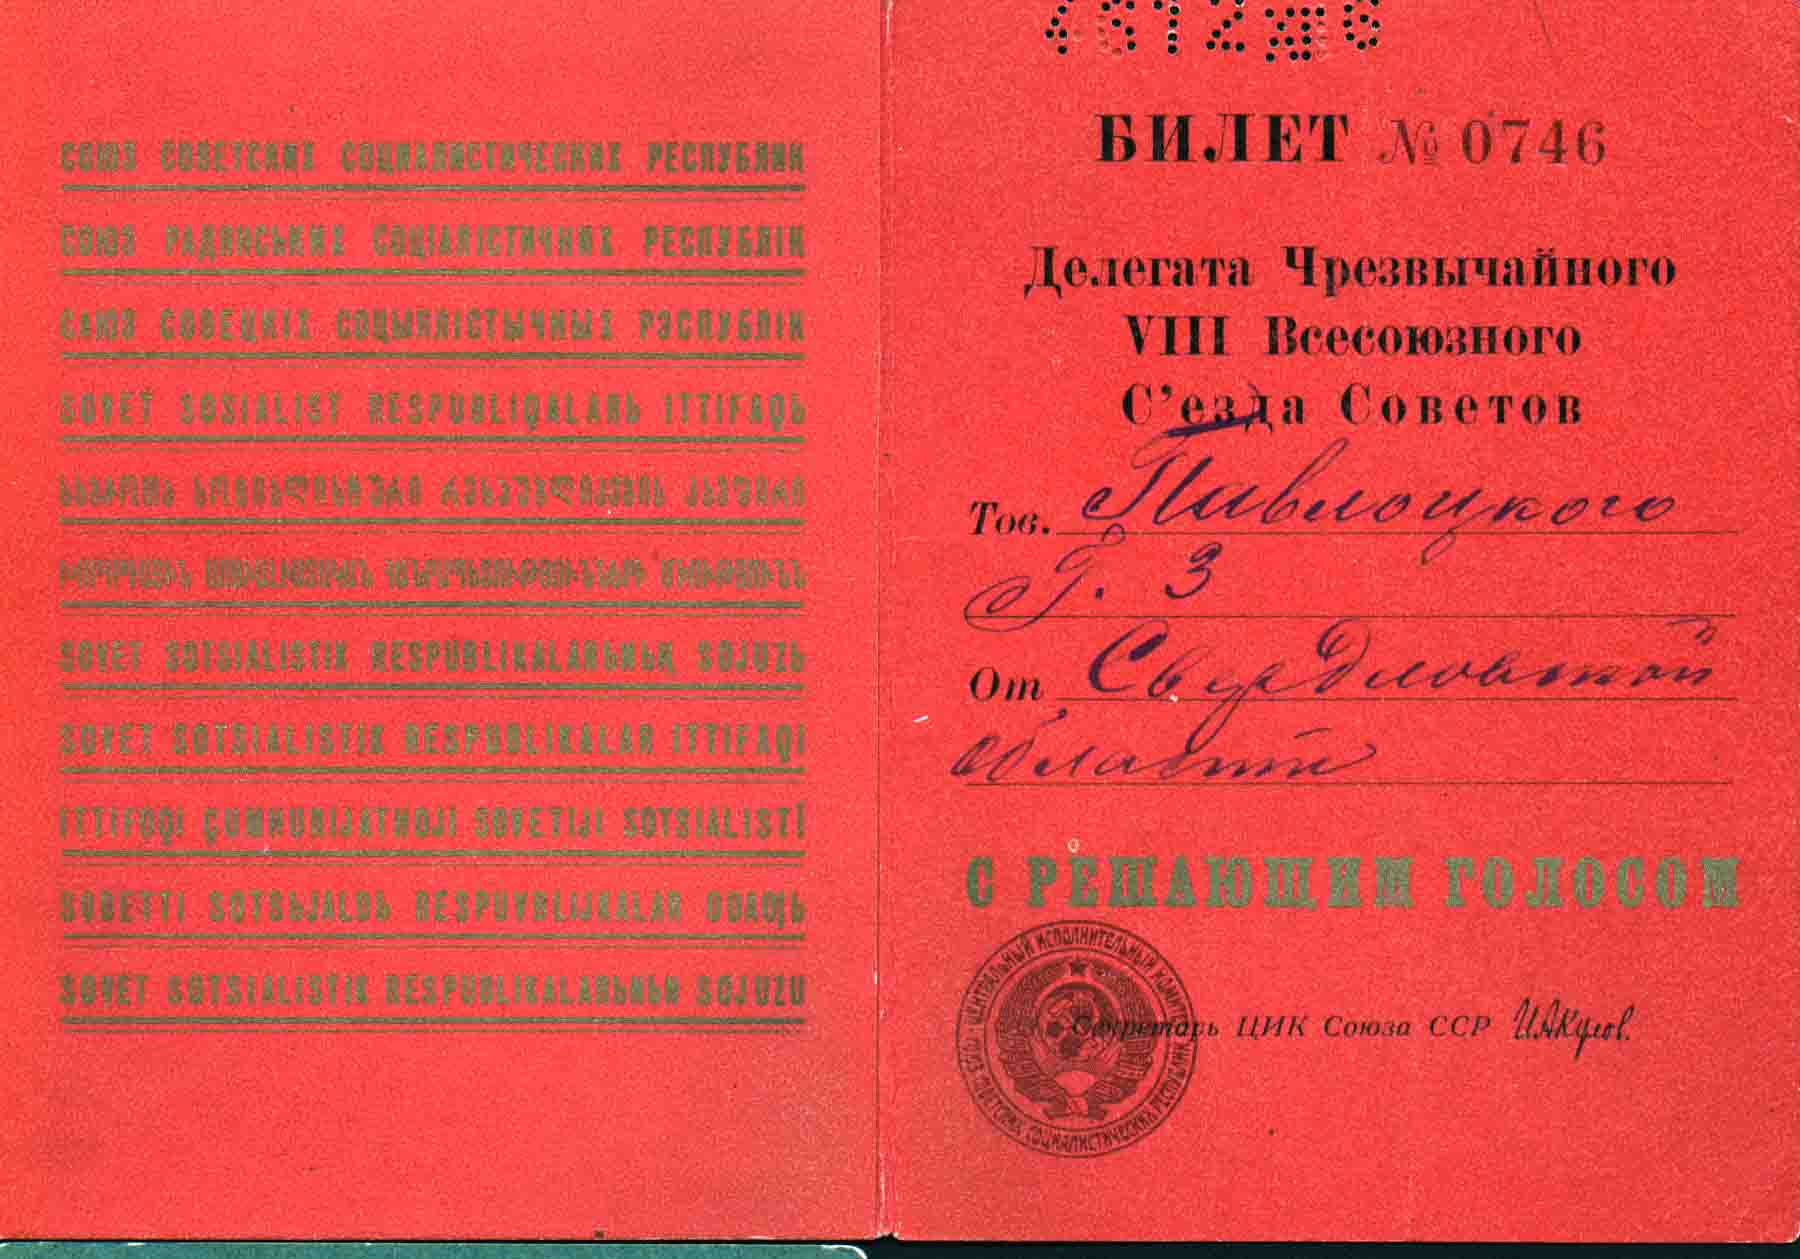 Билет Делегата Чрезвычайного VIII Всесоюзного Съезда Советов Г.З. Павлоцкого